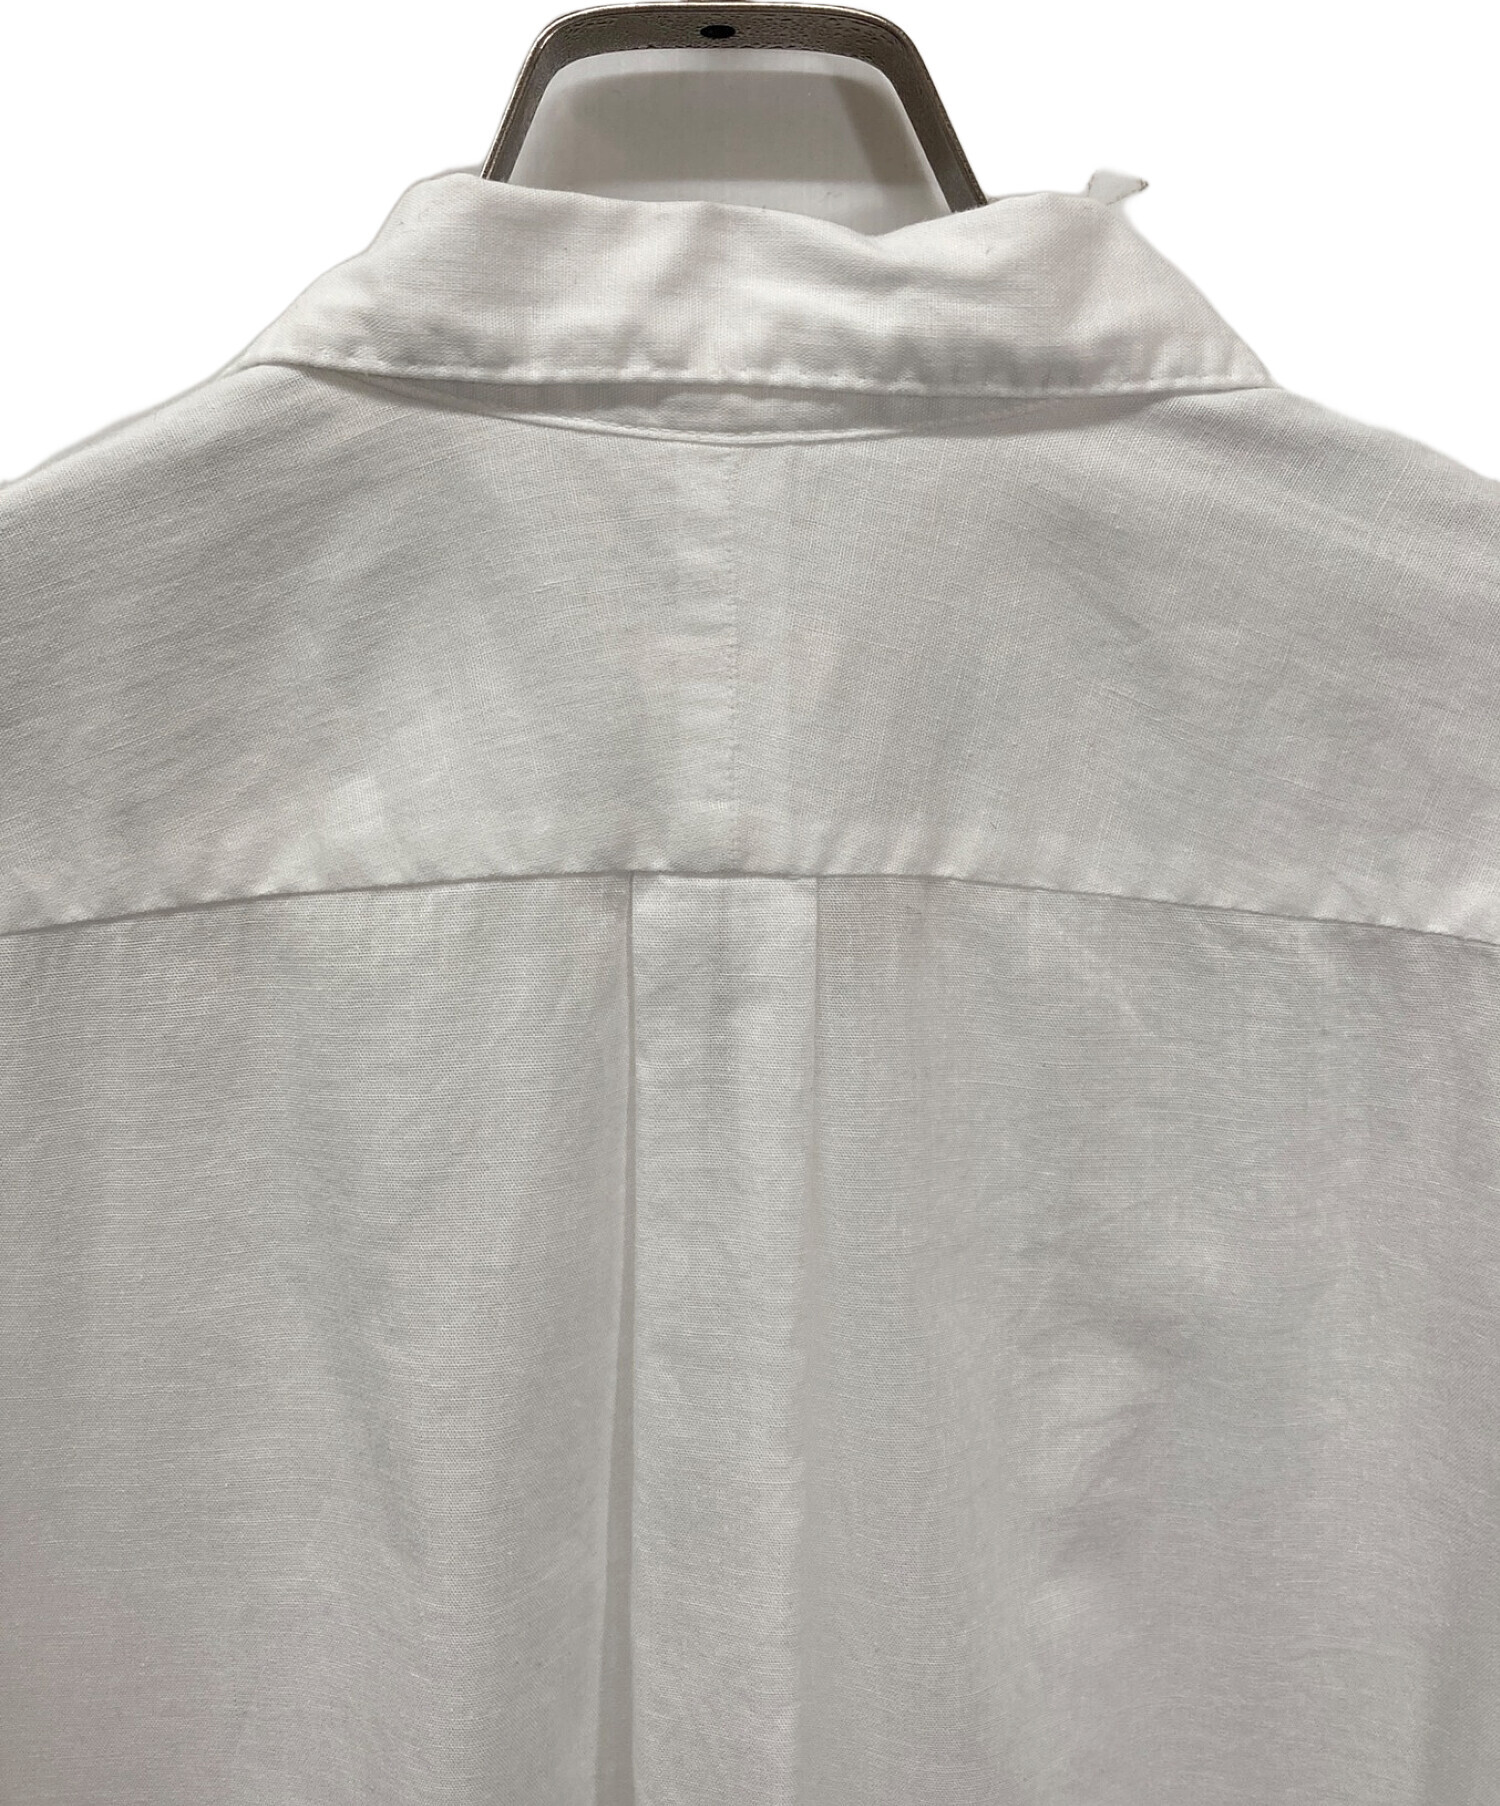 COMOLI (コモリ) ベタシャン オープンカラーシャツ/T01-02012 ホワイト サイズ:1